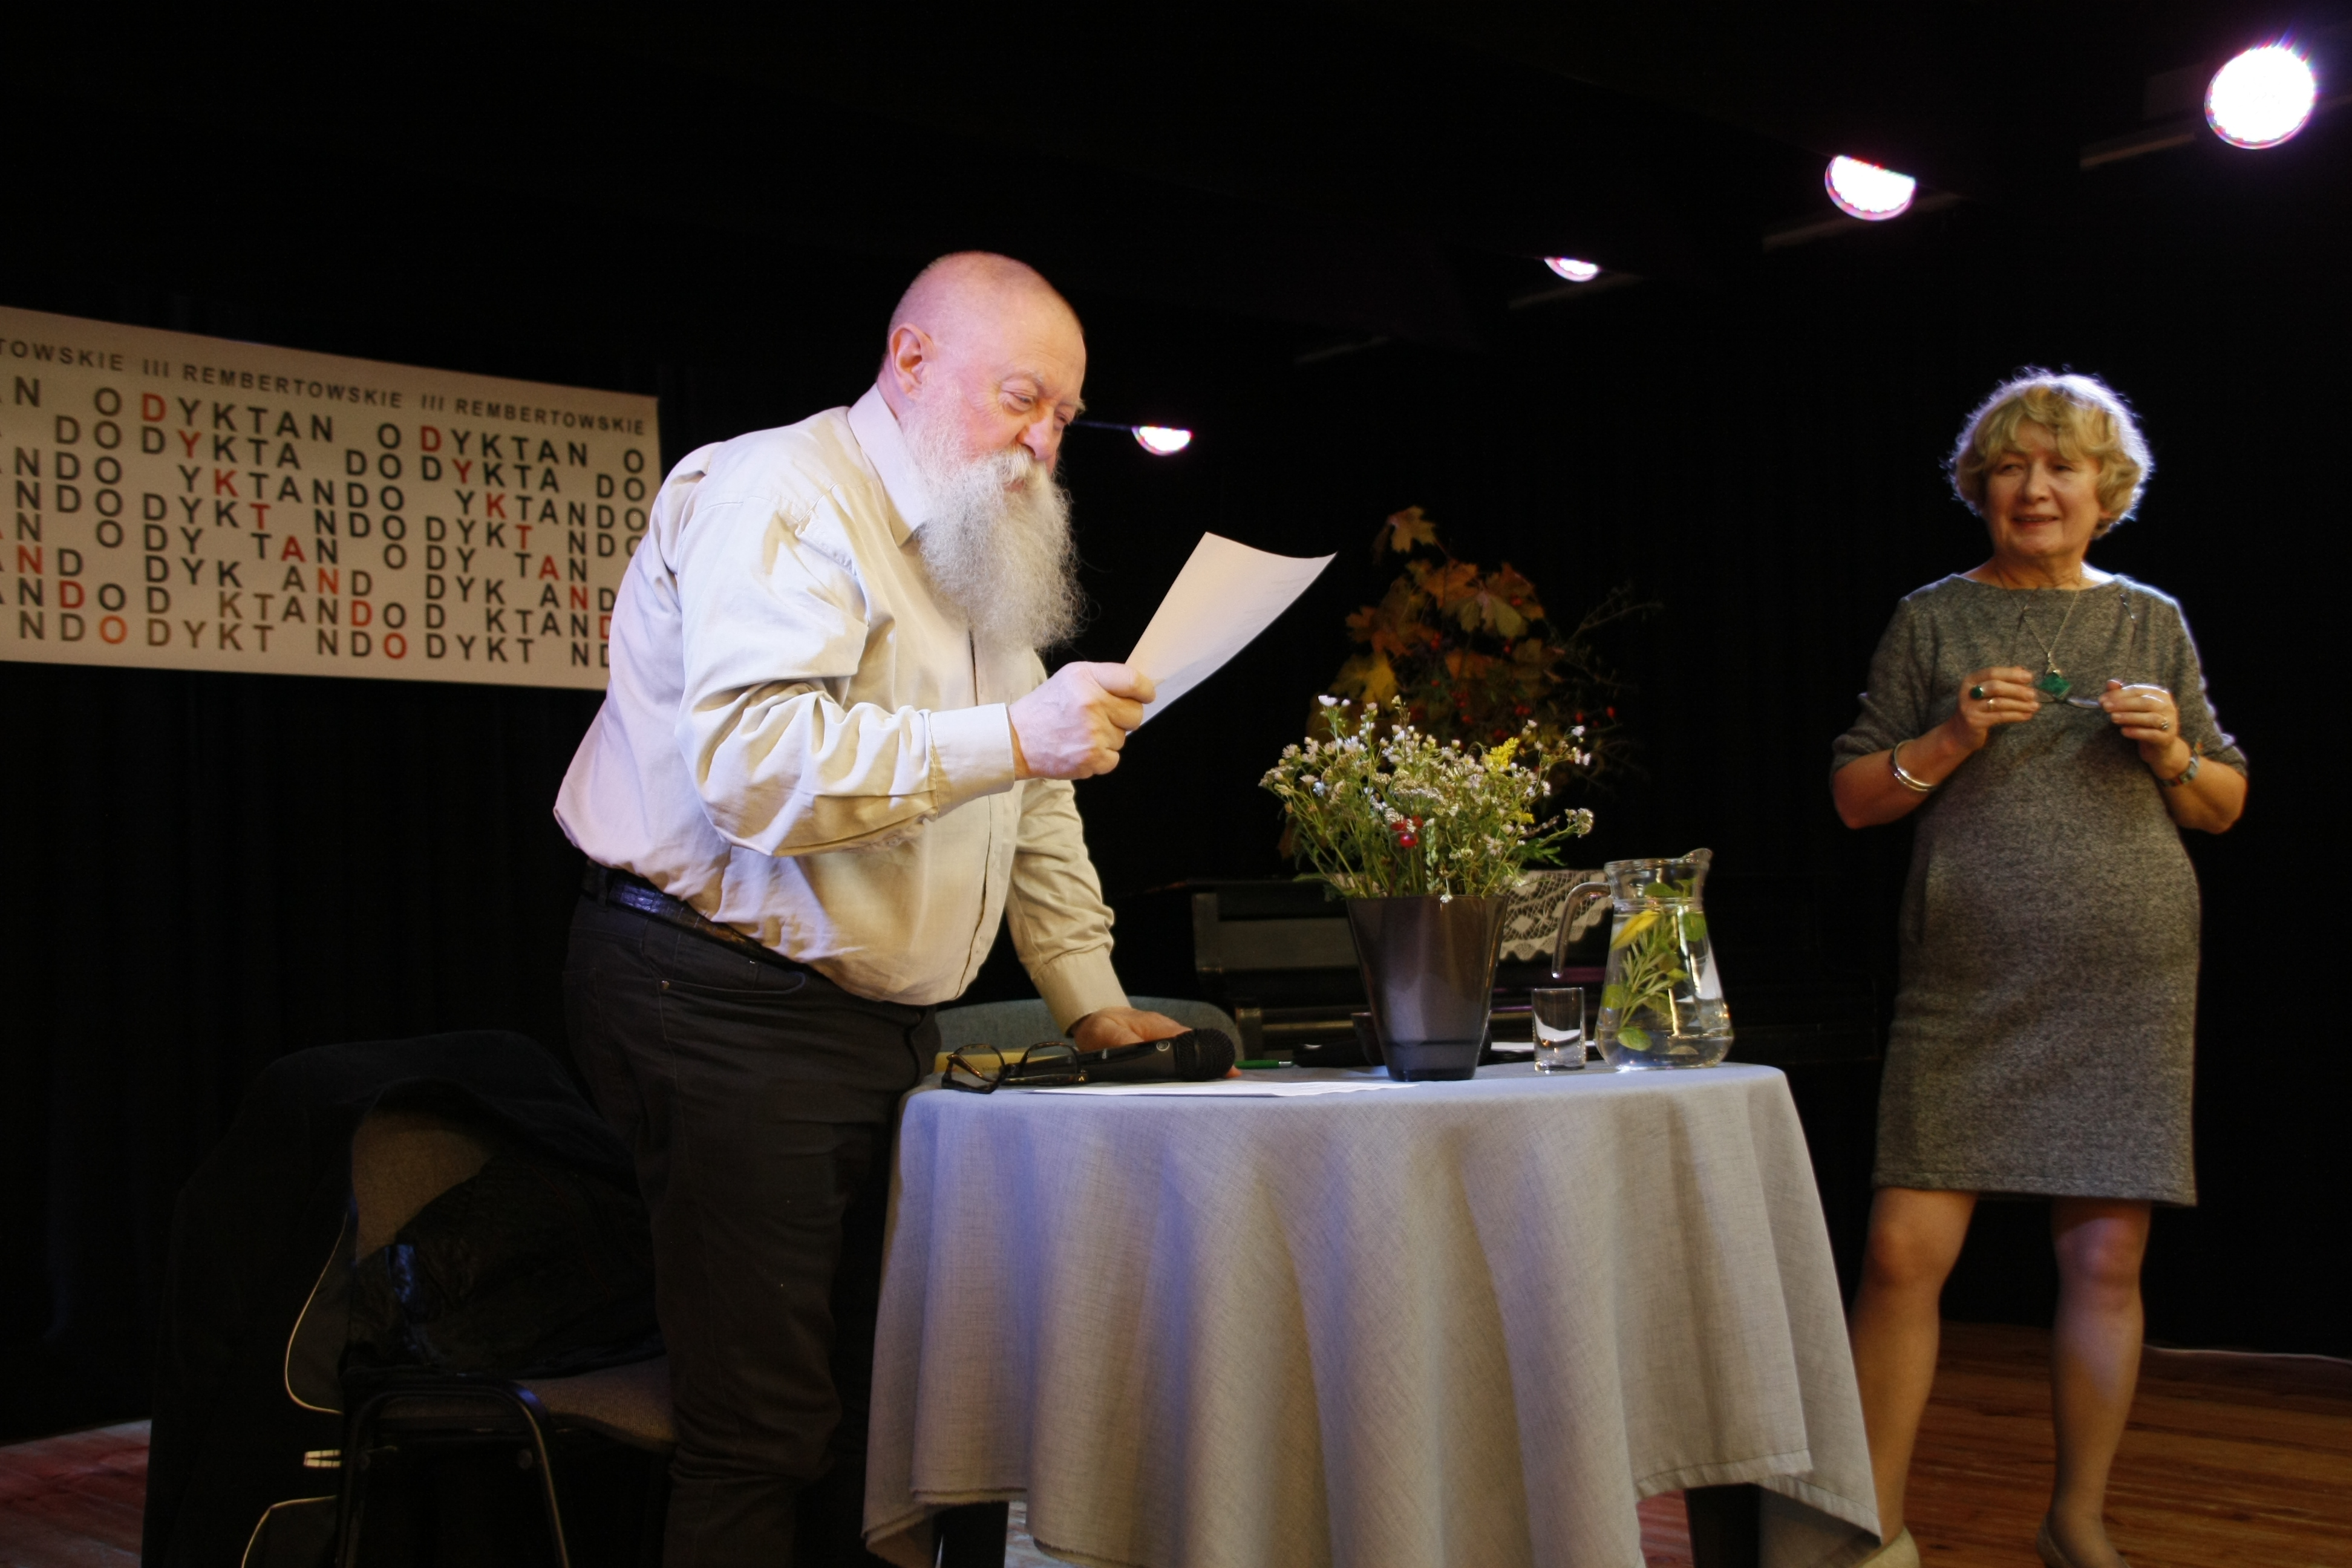 Na scenie stoi profesor Bralczyk odczytujący treść dyktanda, opiera się o przystrojony kwiatami stolik. Uważnie słucha go doktor Majkowska